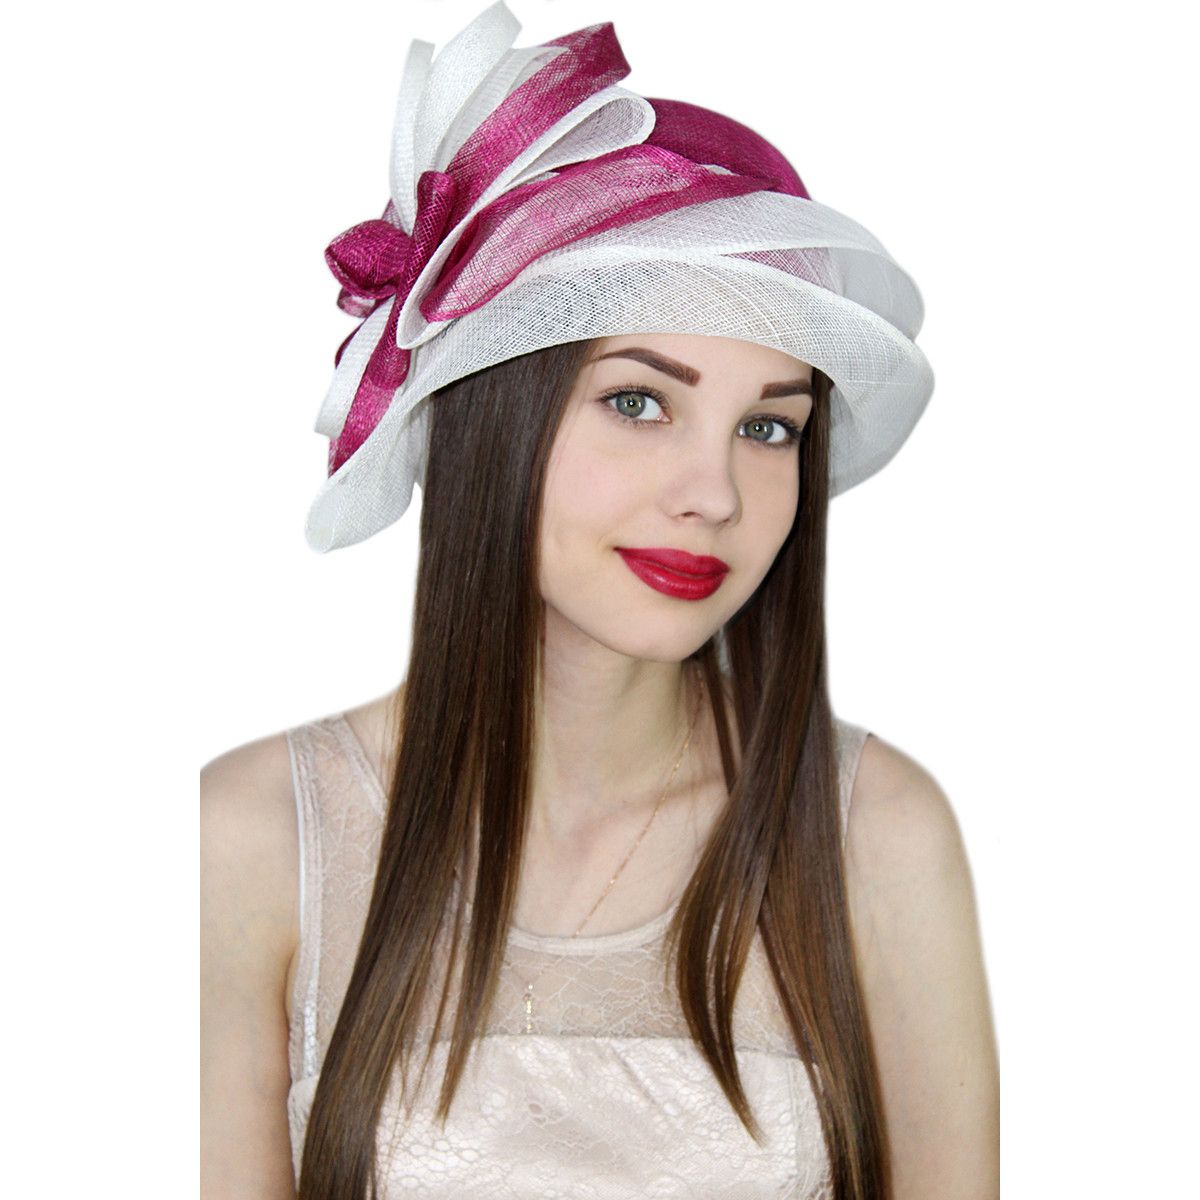 Купить шляпу в интернет магазине. Яркие шляпы. Фиолетовая шляпка женская. Шляпы яркие молодежные. Яркая шляпка с пейсами.